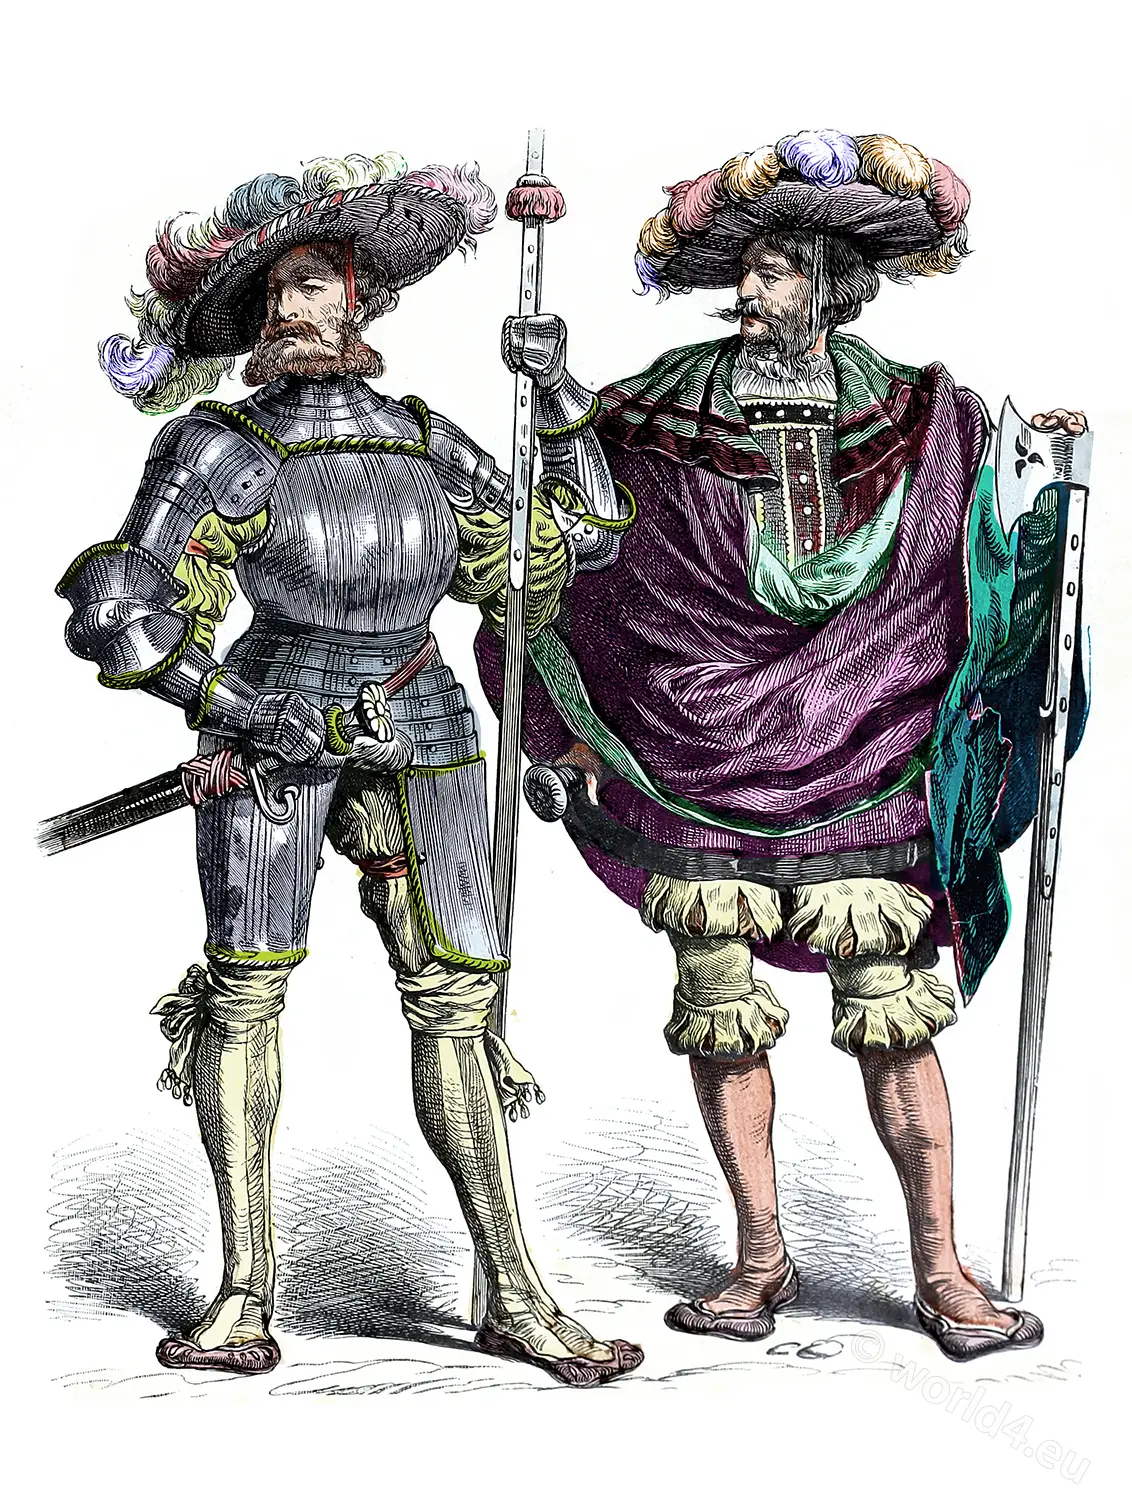 Captain, Leutnant, 16th century, German, renaissance, soldiers, Münchener Bilderbogen,